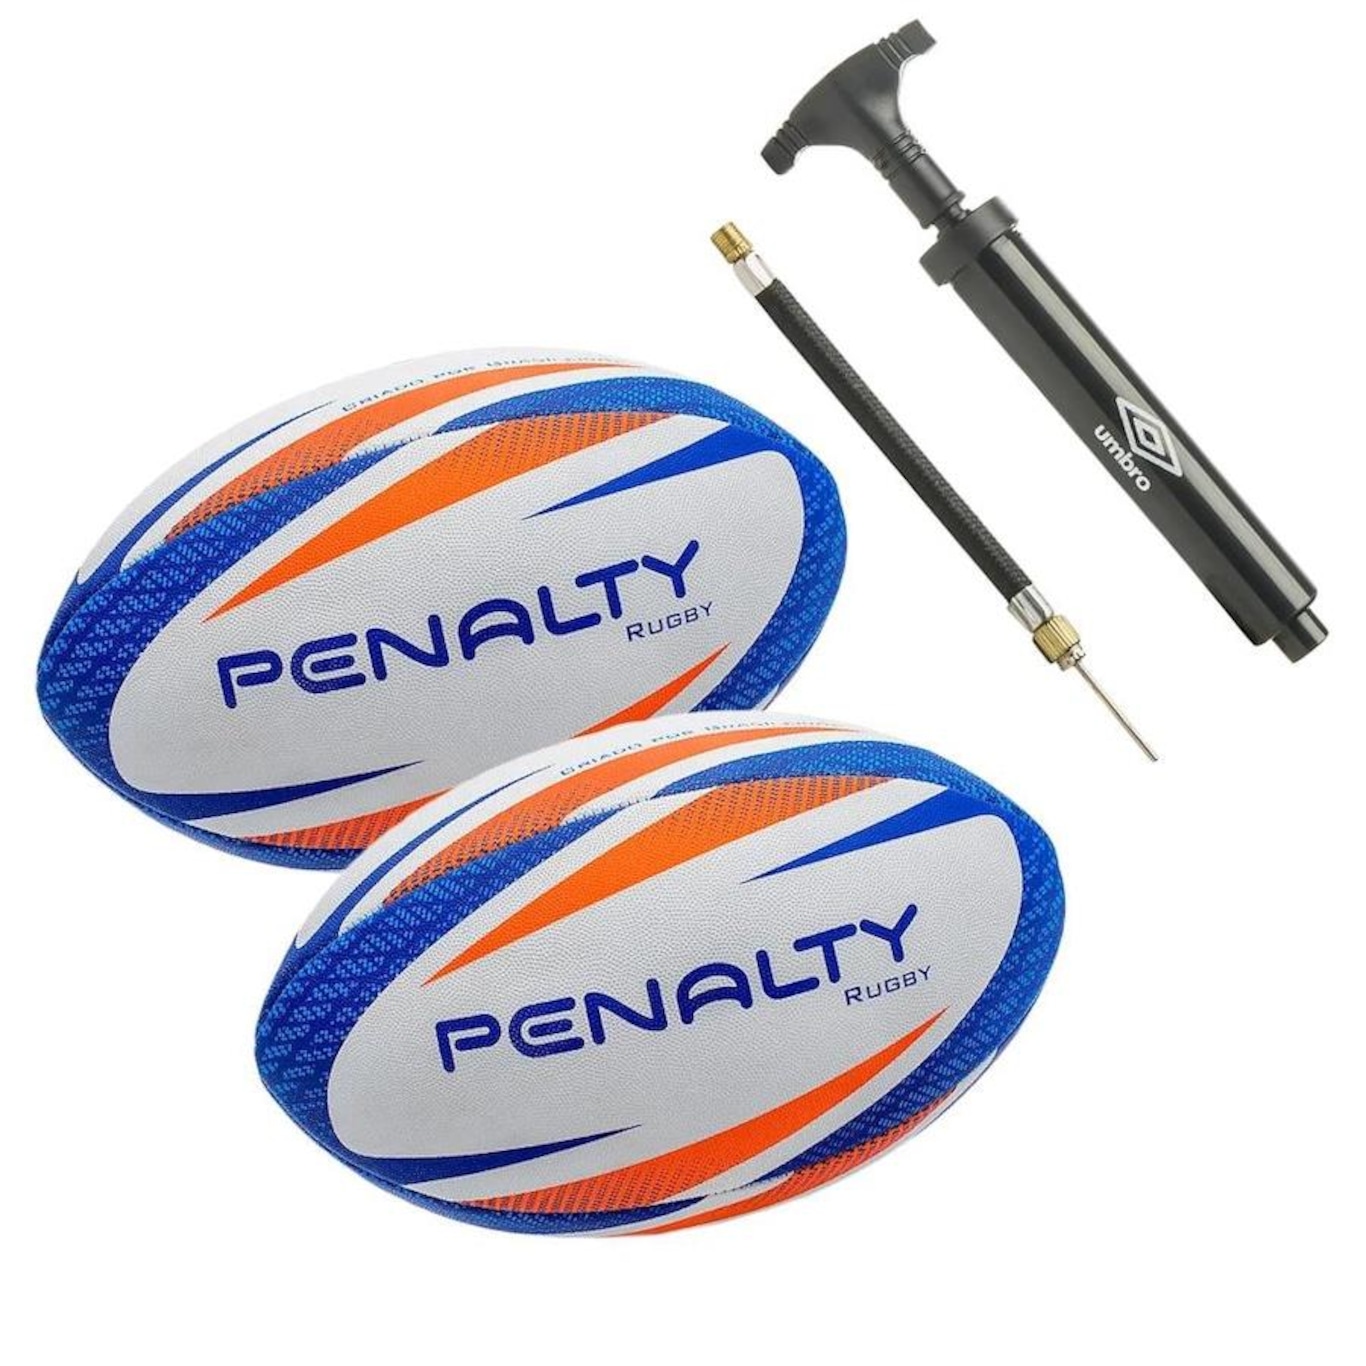 Bolas de Rugby Penalty Ix - 2 unidades + Bomba Inflável Umbro - Foto 1